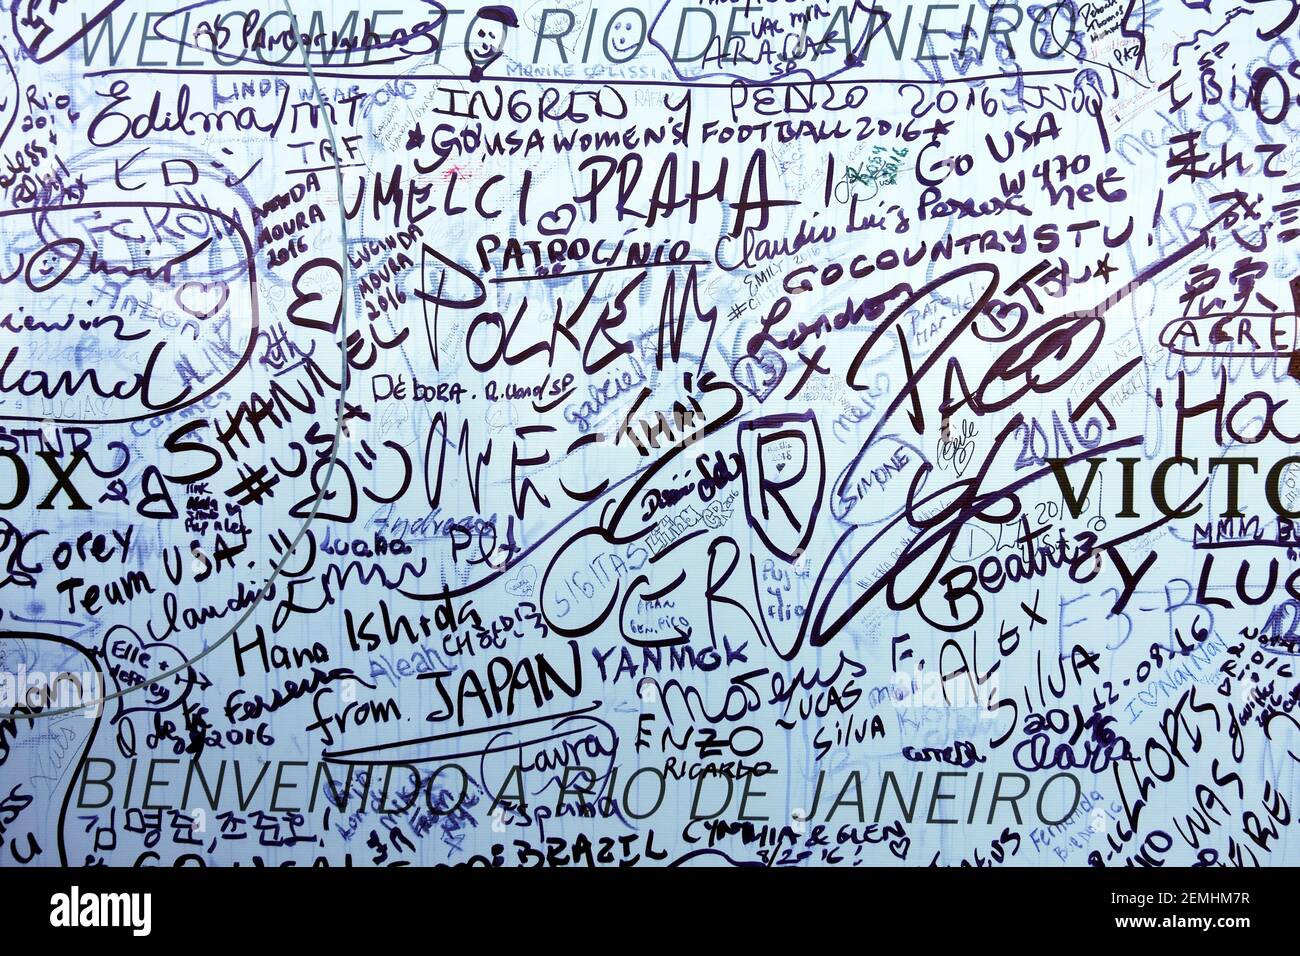 Muro de visitantes donde la gente puede dejar mensajes o sus nombres en la montaña Sugarloaf durante los Juegos Olímpicos de 2016 en Río de Janeiro, Brasil Foto de stock